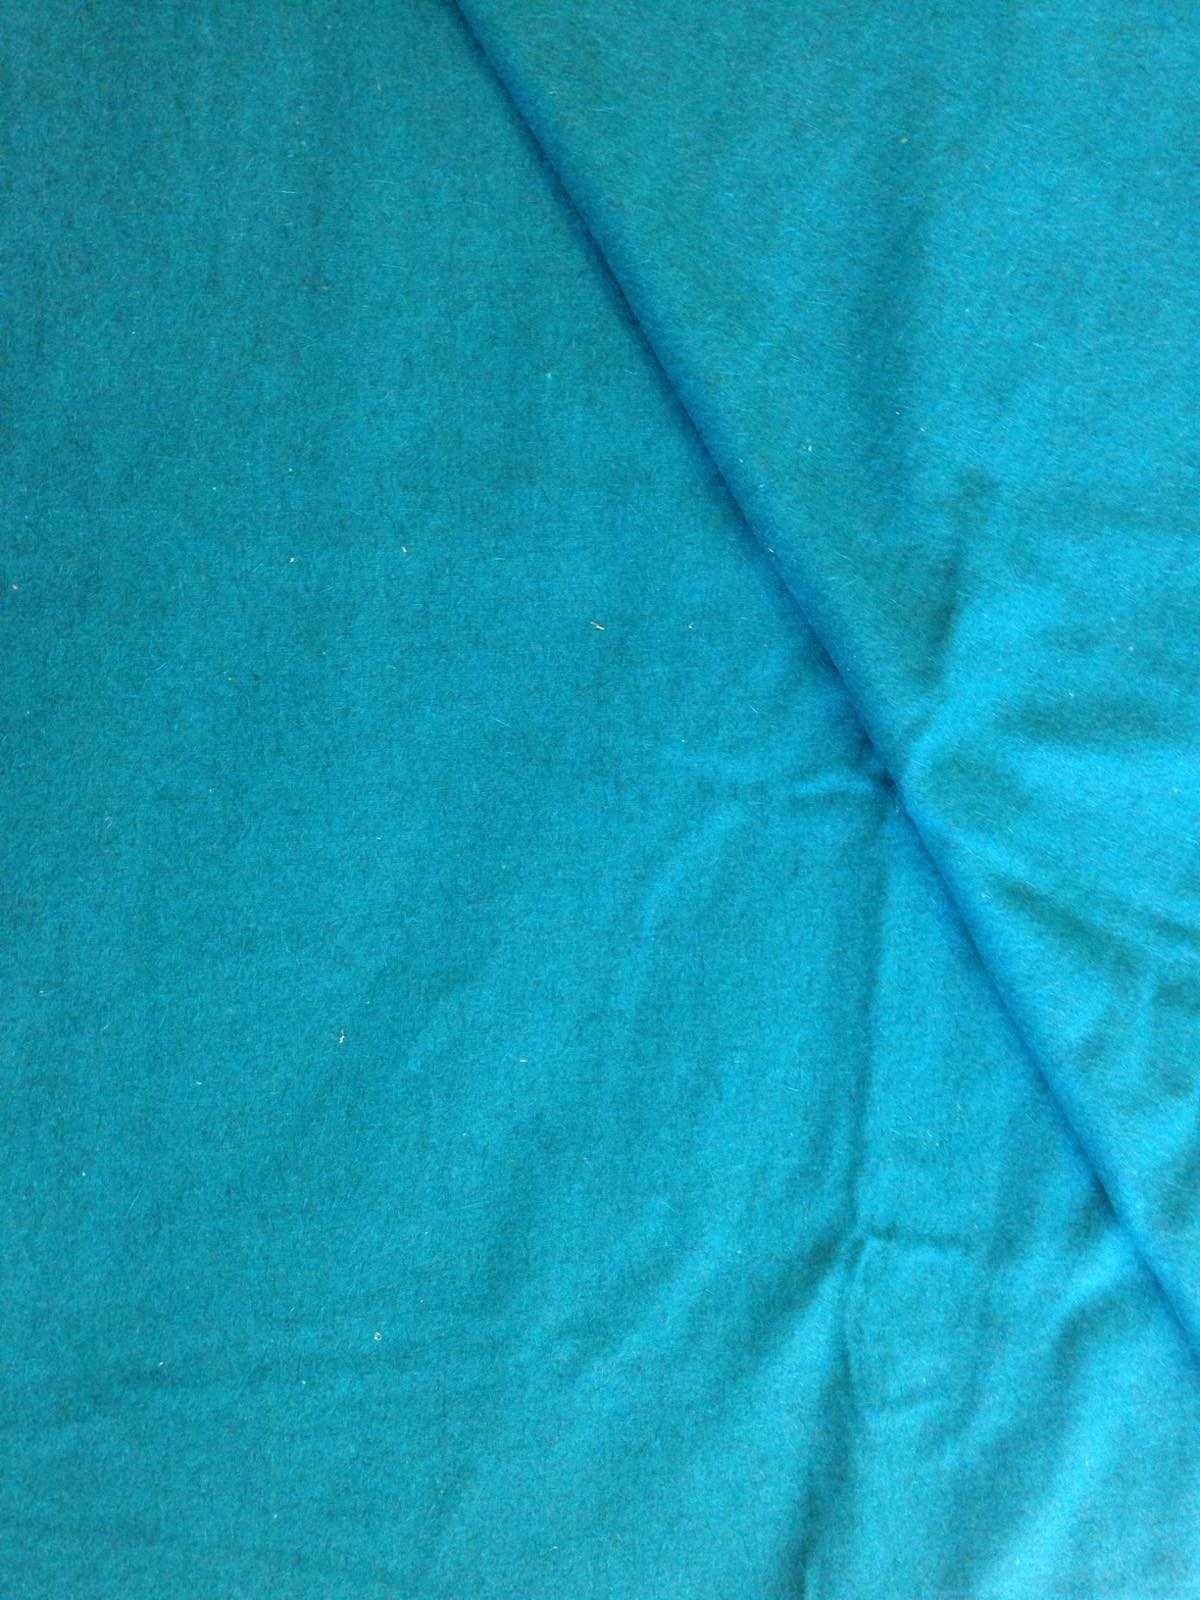 Ткань плащевка голубая бирюза СССР